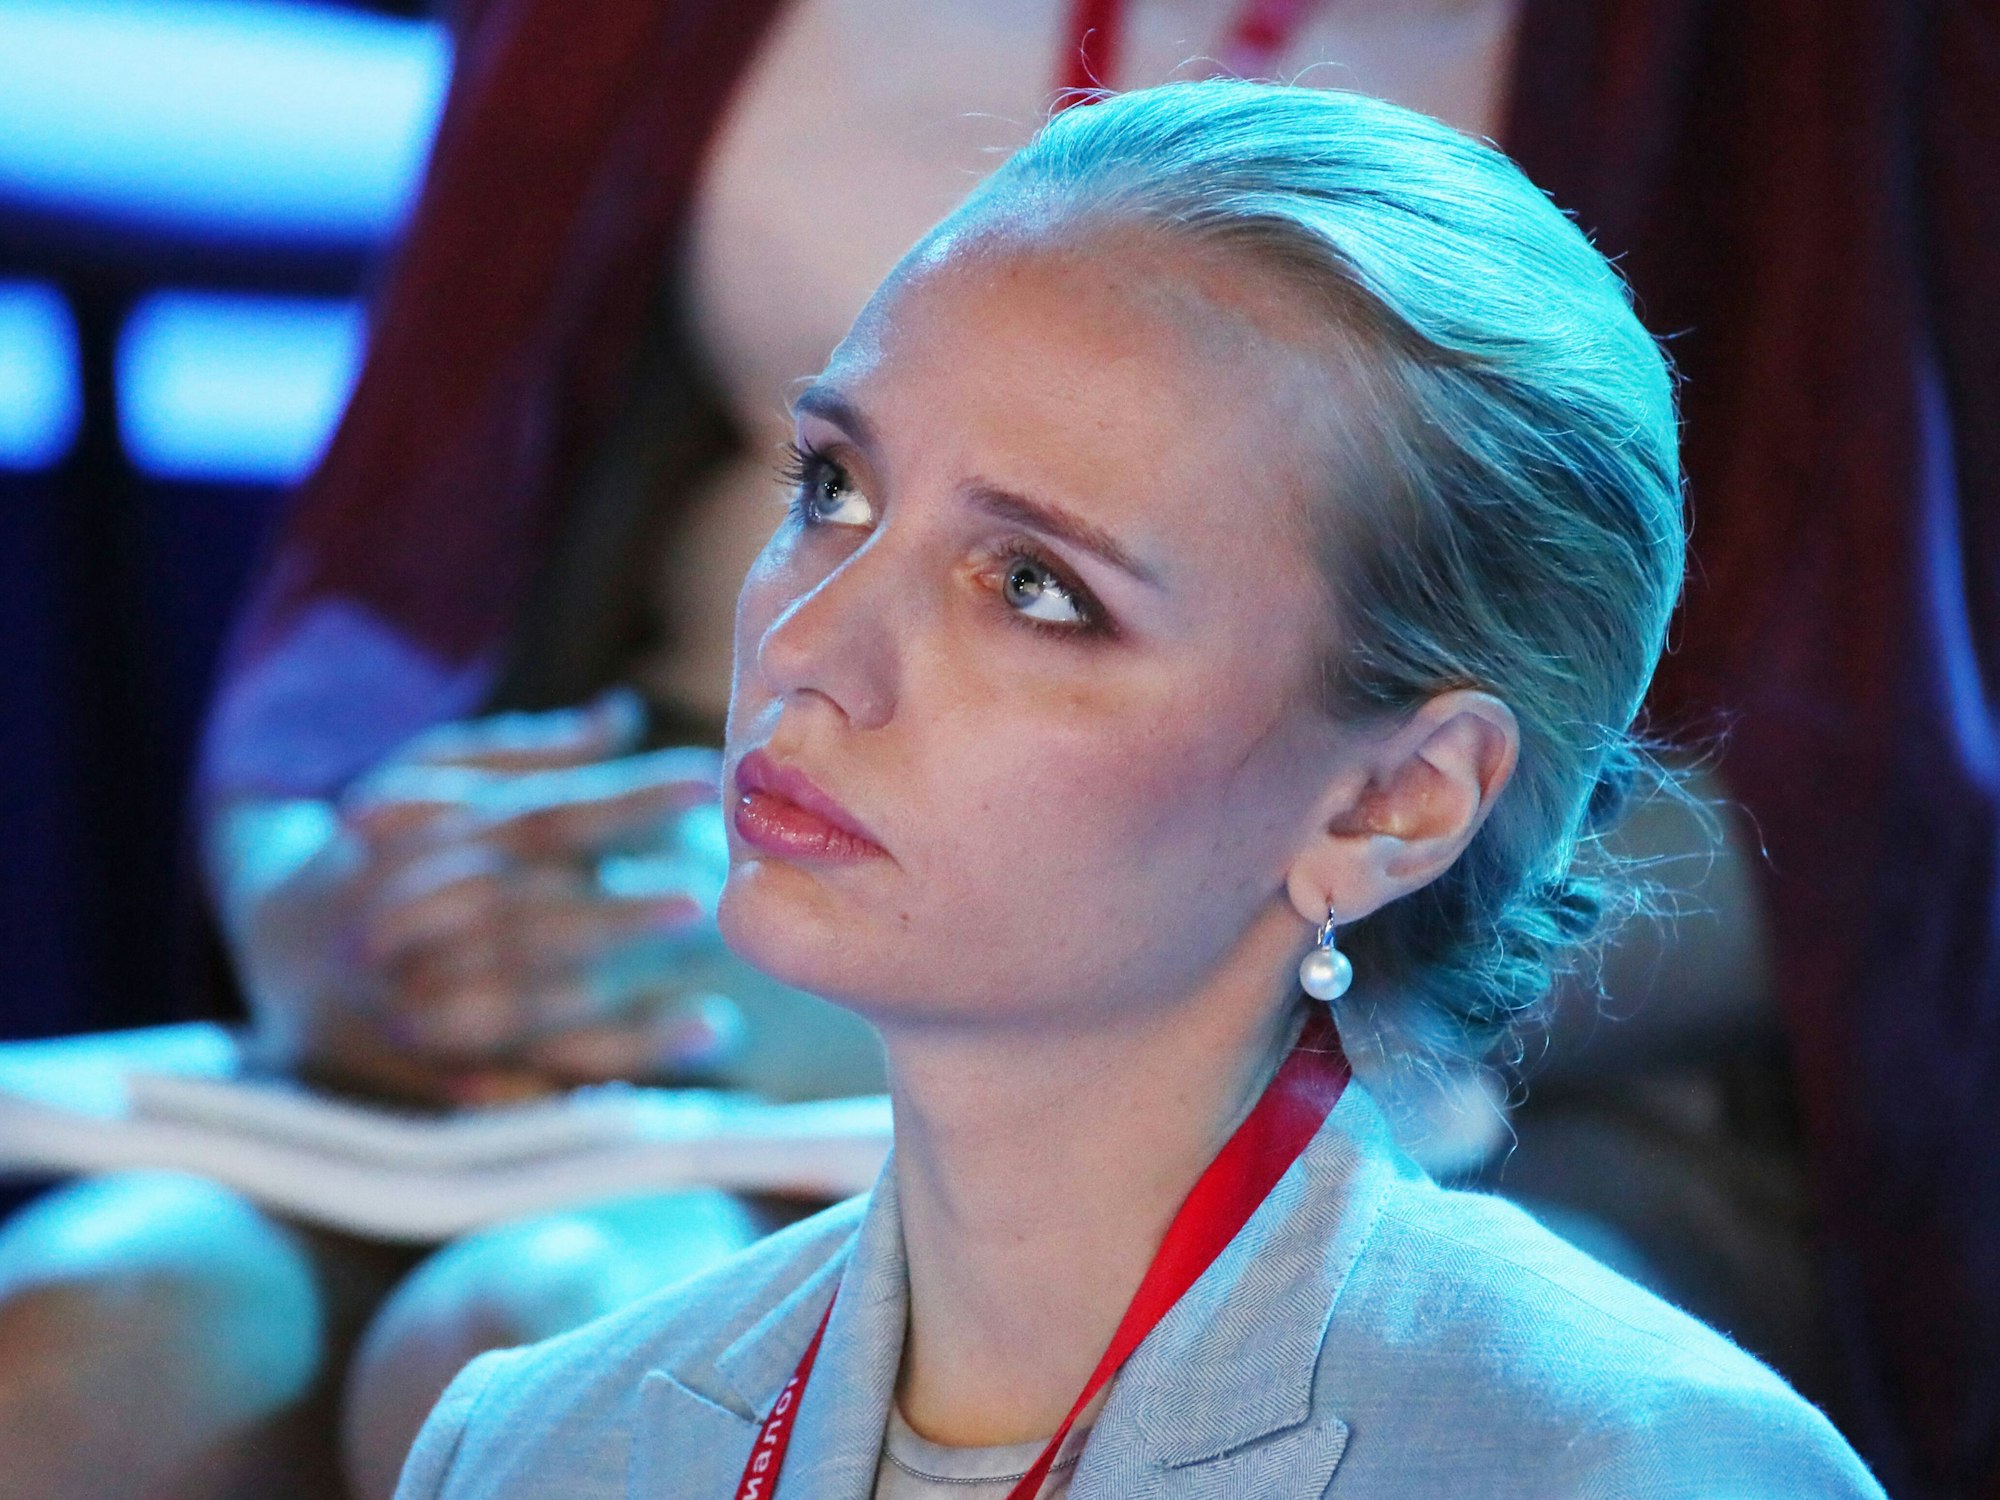 Trotz westlicher Sanktionen veröffentlicht Putins Tochter Maria Woronzowa weiterhin wissenschaftliche Artikel. Unser Foto zeigt sie im Juli 2021 während einer internationalen Konferenz in Sotschi.